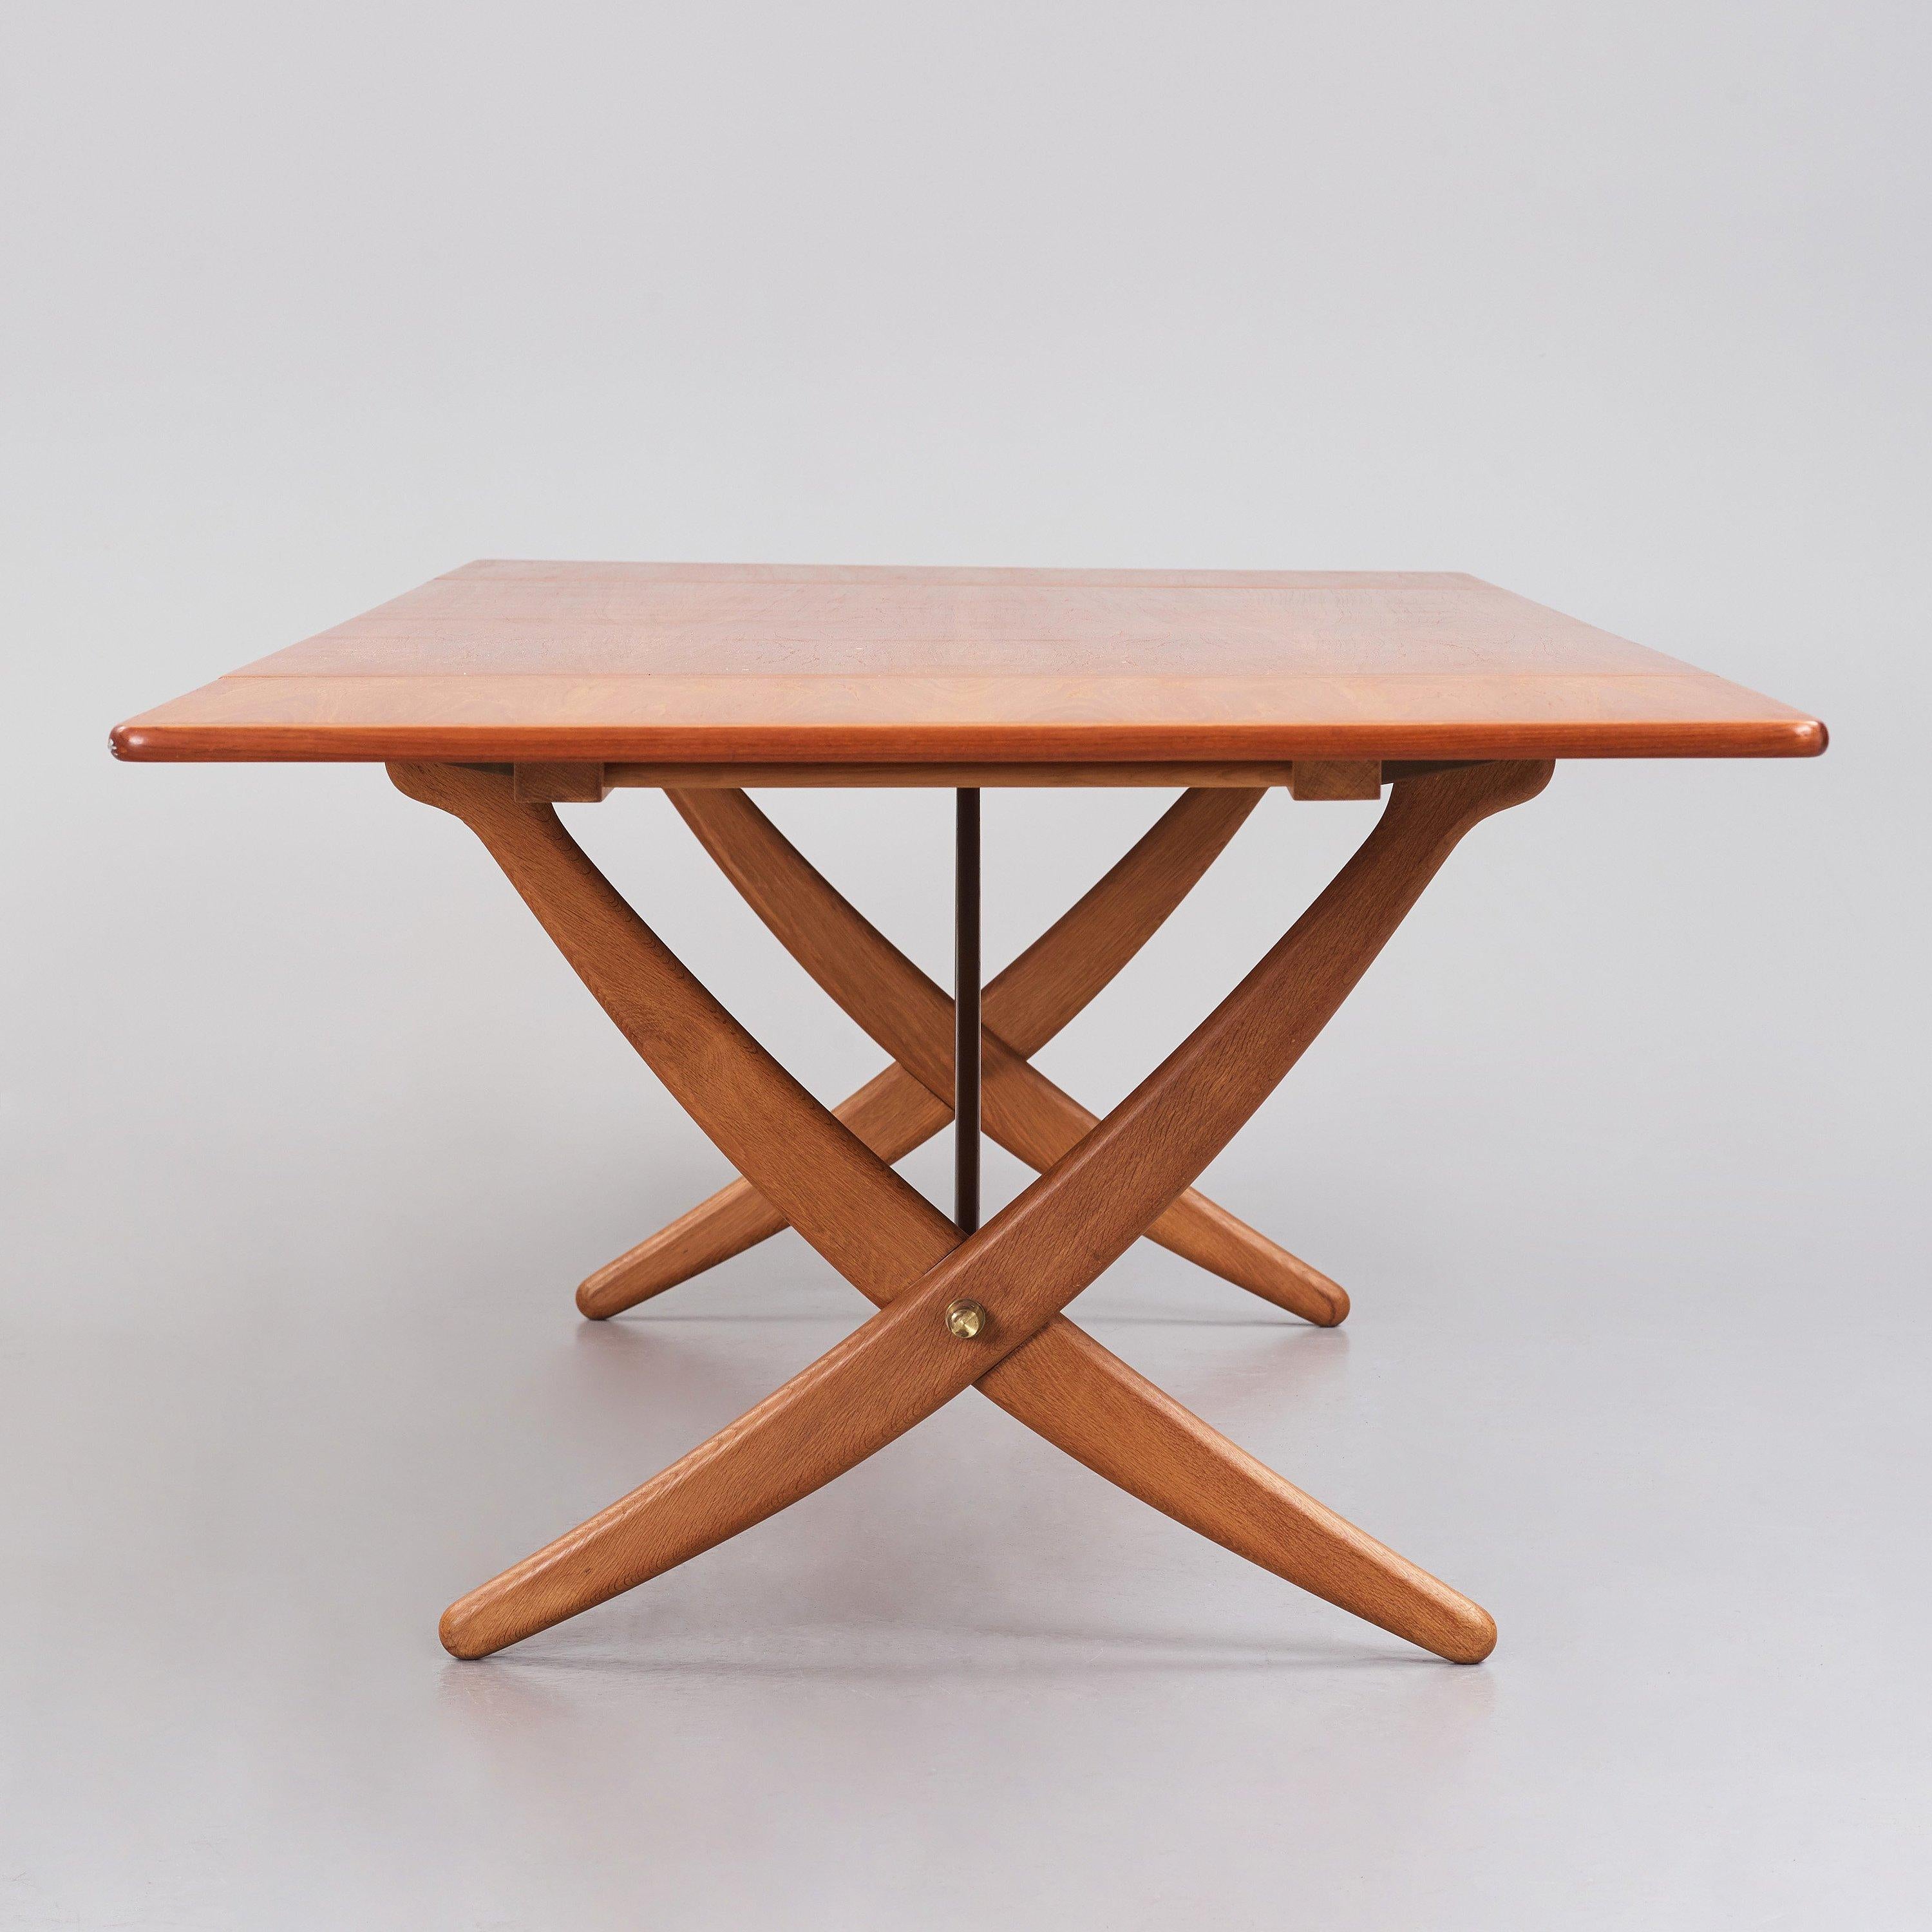 Il s'agit d'une rare et ancienne table de salle à manger Hans J. Wegner AT-314 en chêne à pied sabre, avec deux pieds tombants, des pieds croisés et des châssis en laiton. Conçue par Wegner en 1950 et fabriquée par l'ébéniste Andreas Tuck au